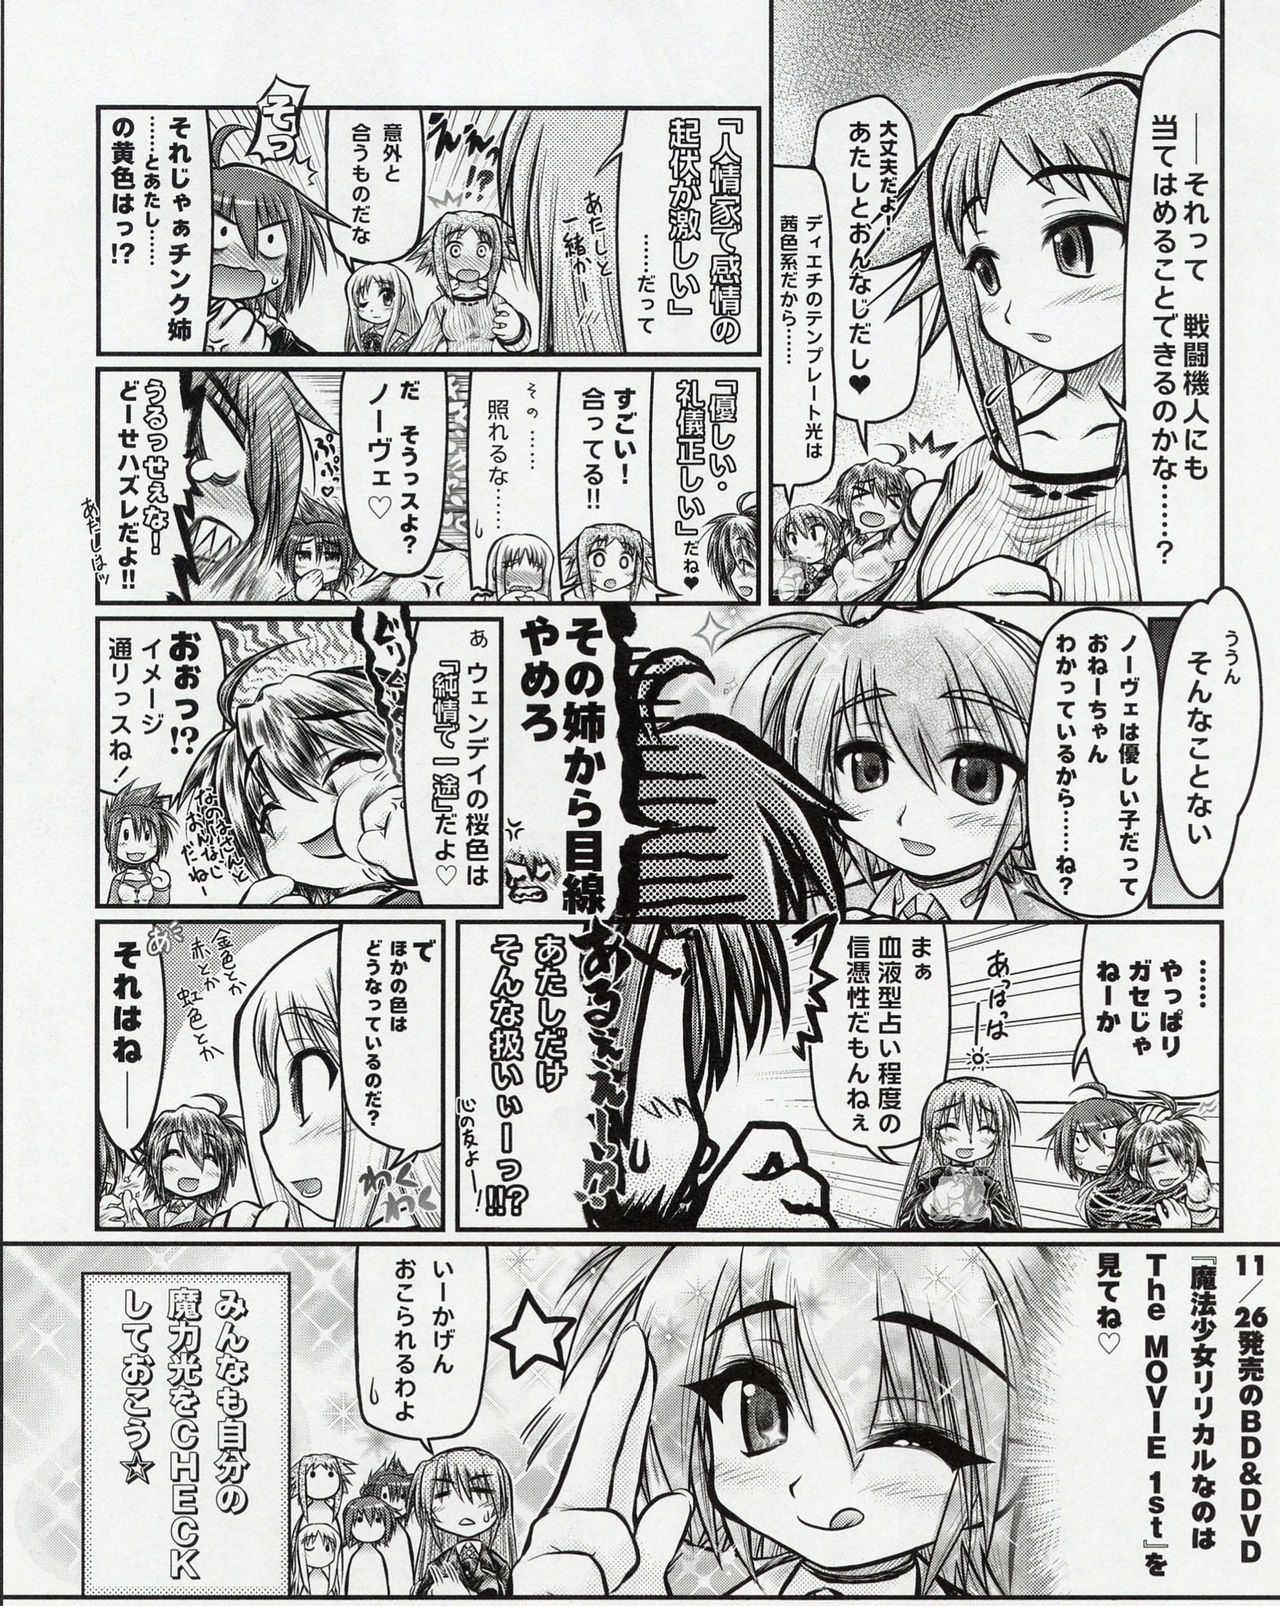 Megami Magazine #127 [2010-12] 21